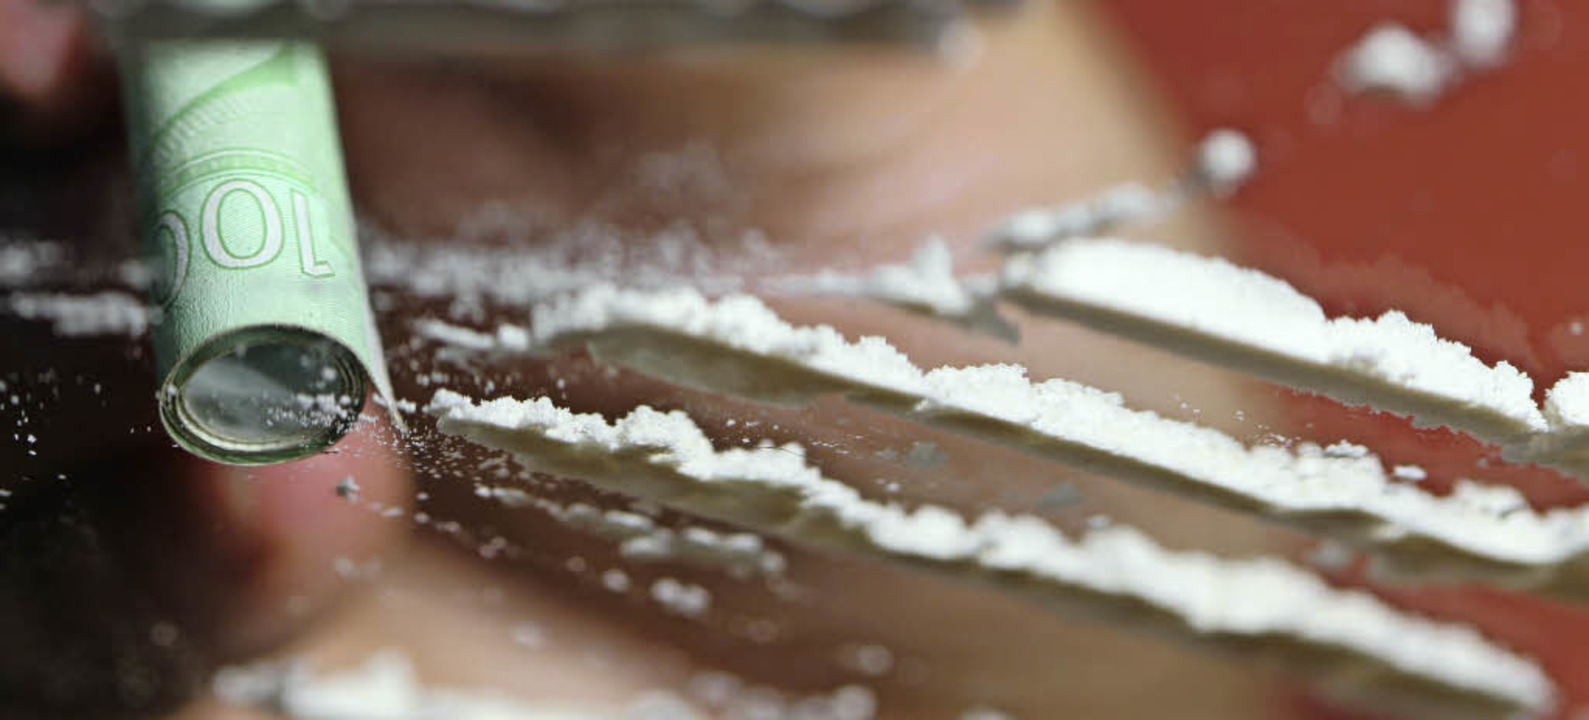 Einer der mutmaßlichen Schleuser konsumierte   Kokain.   | Foto: dpa